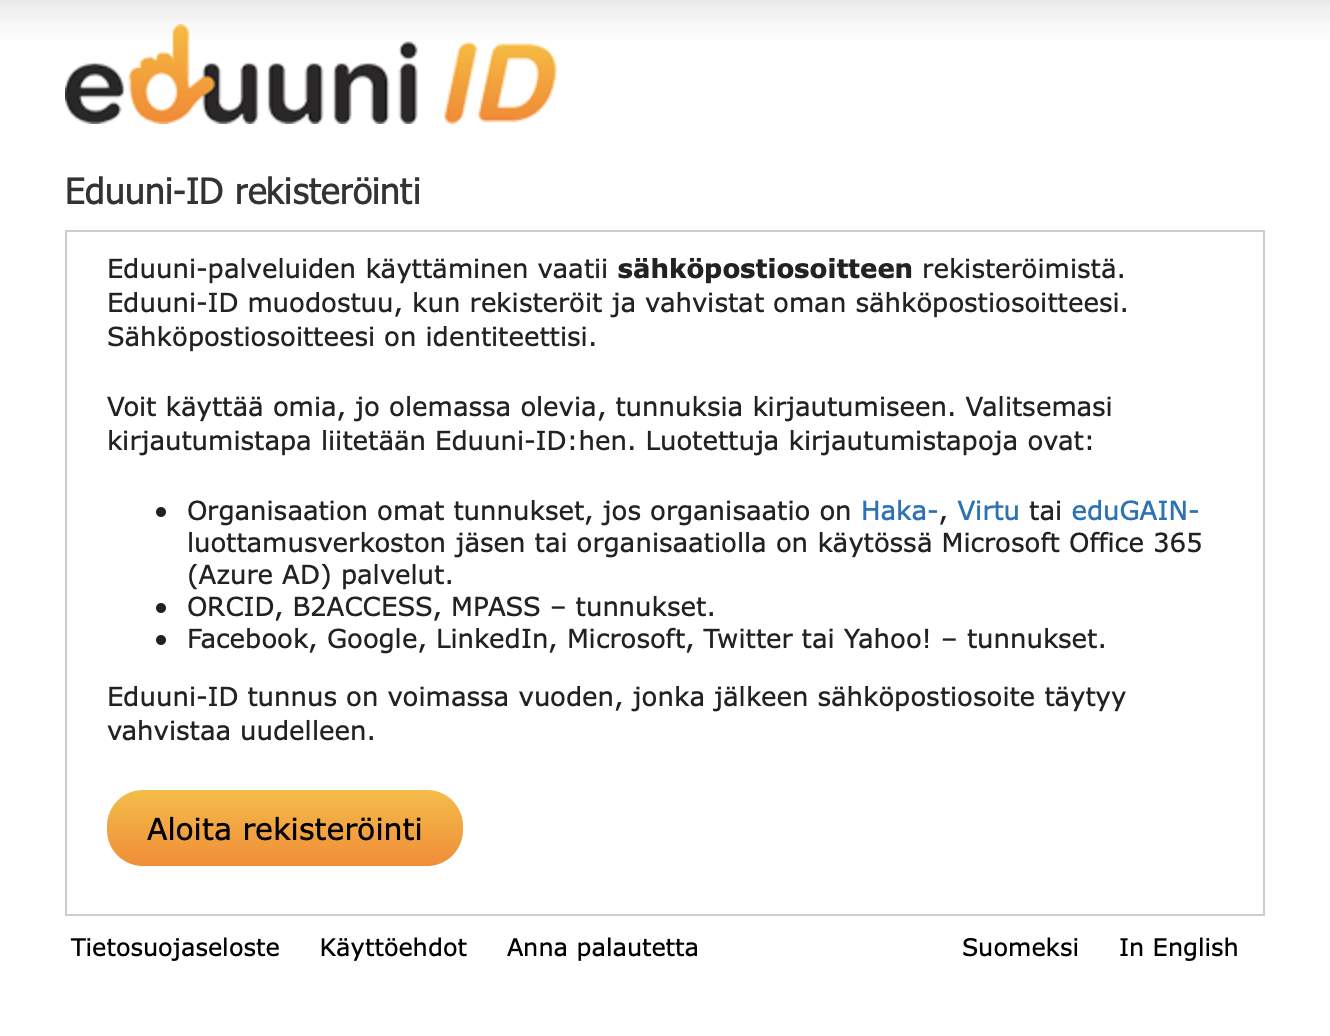 Aloita rekisteröinti -sivu osoitteessa id.eduuni.fi.